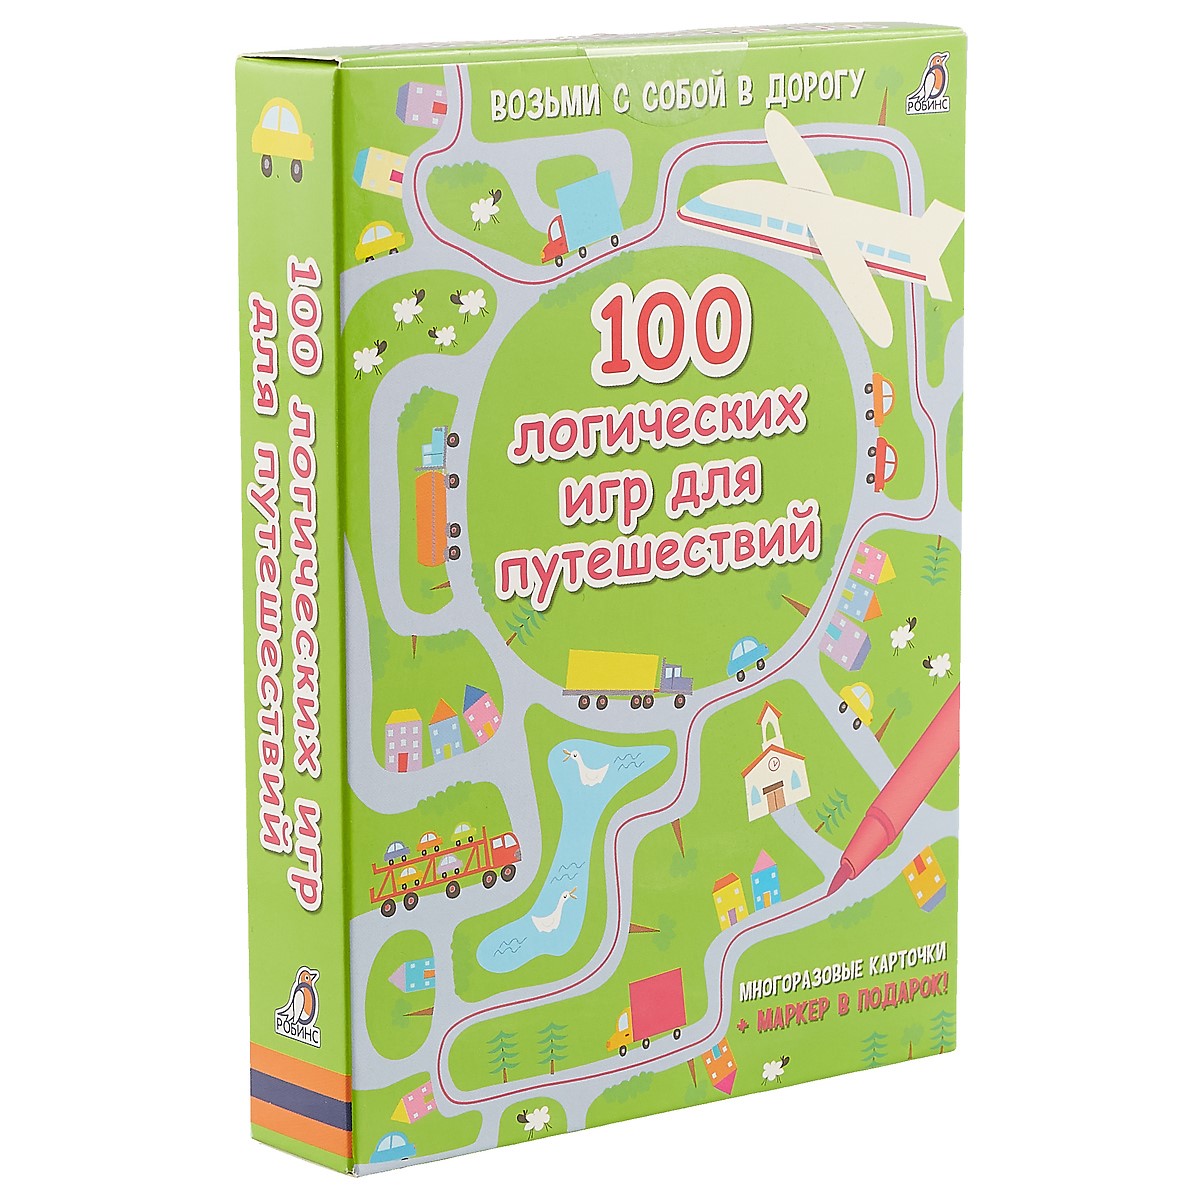 Асборн - карточки. 100 логических игр для путешествий асборн карточки 100 увлекательных игр для путешествий елена писарева